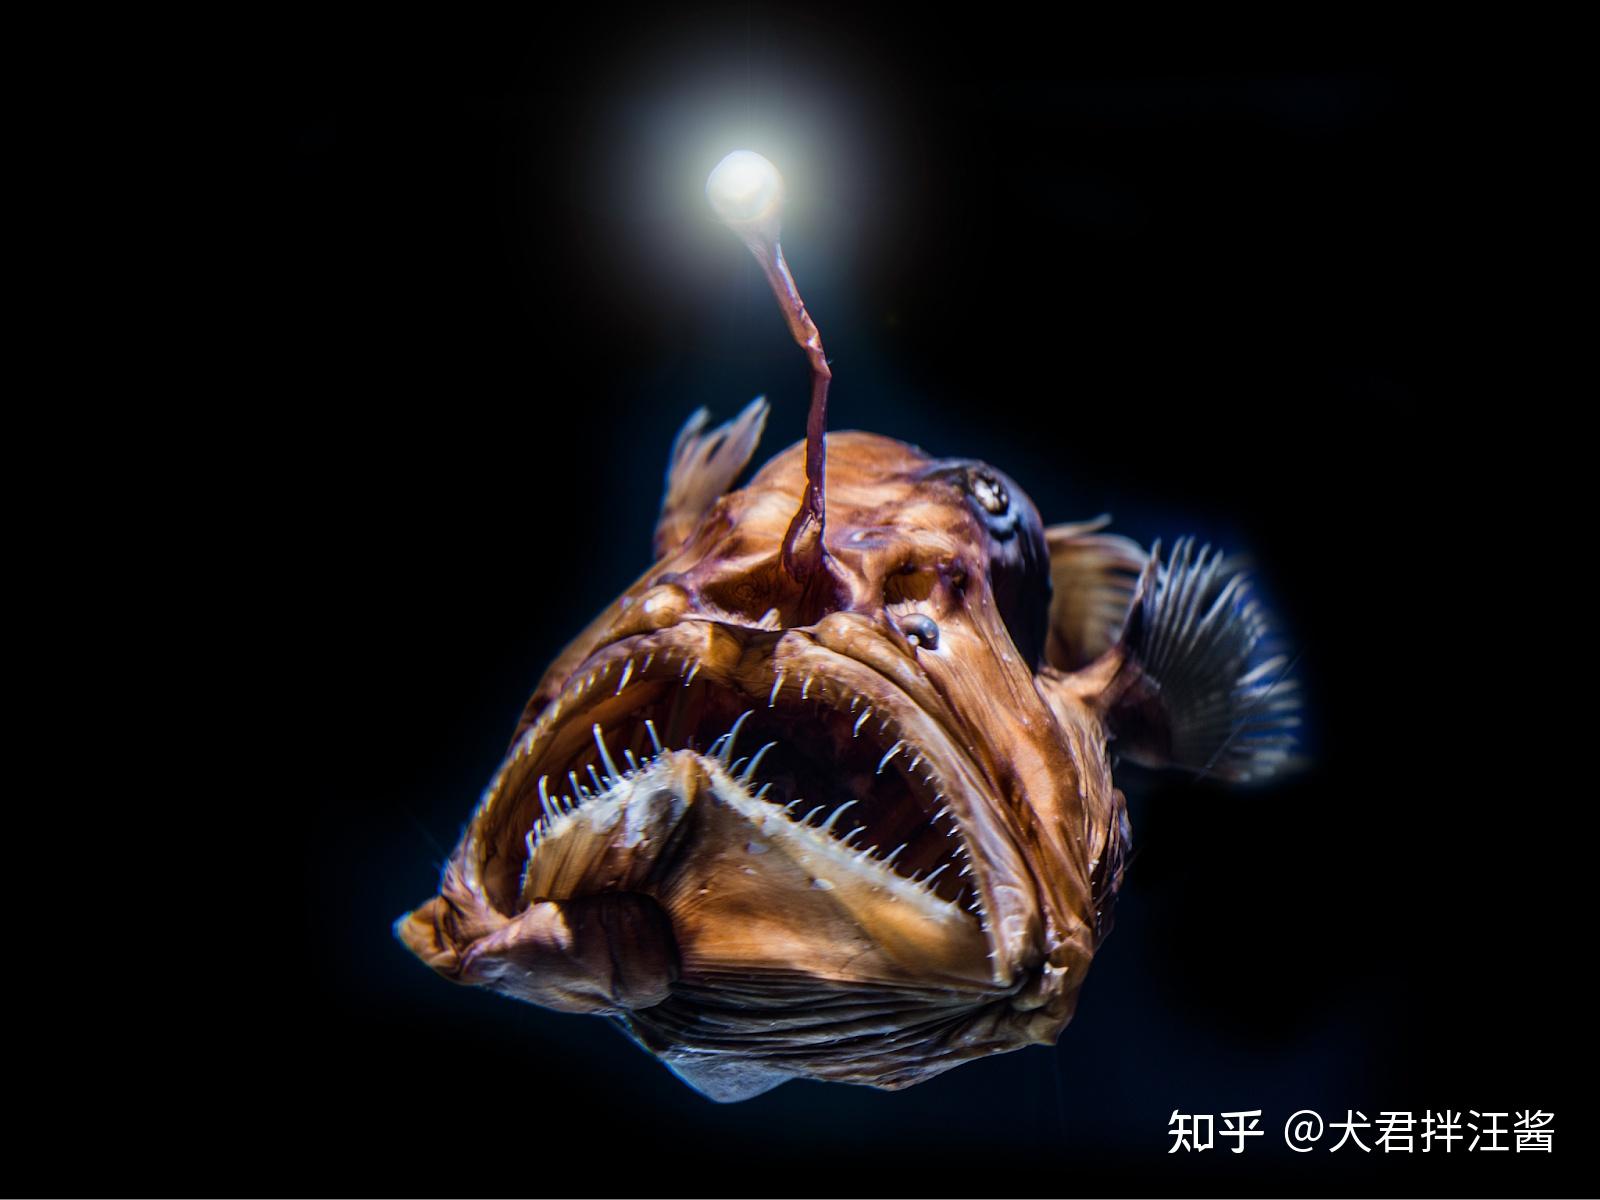 灯笼鱼恐怖图片